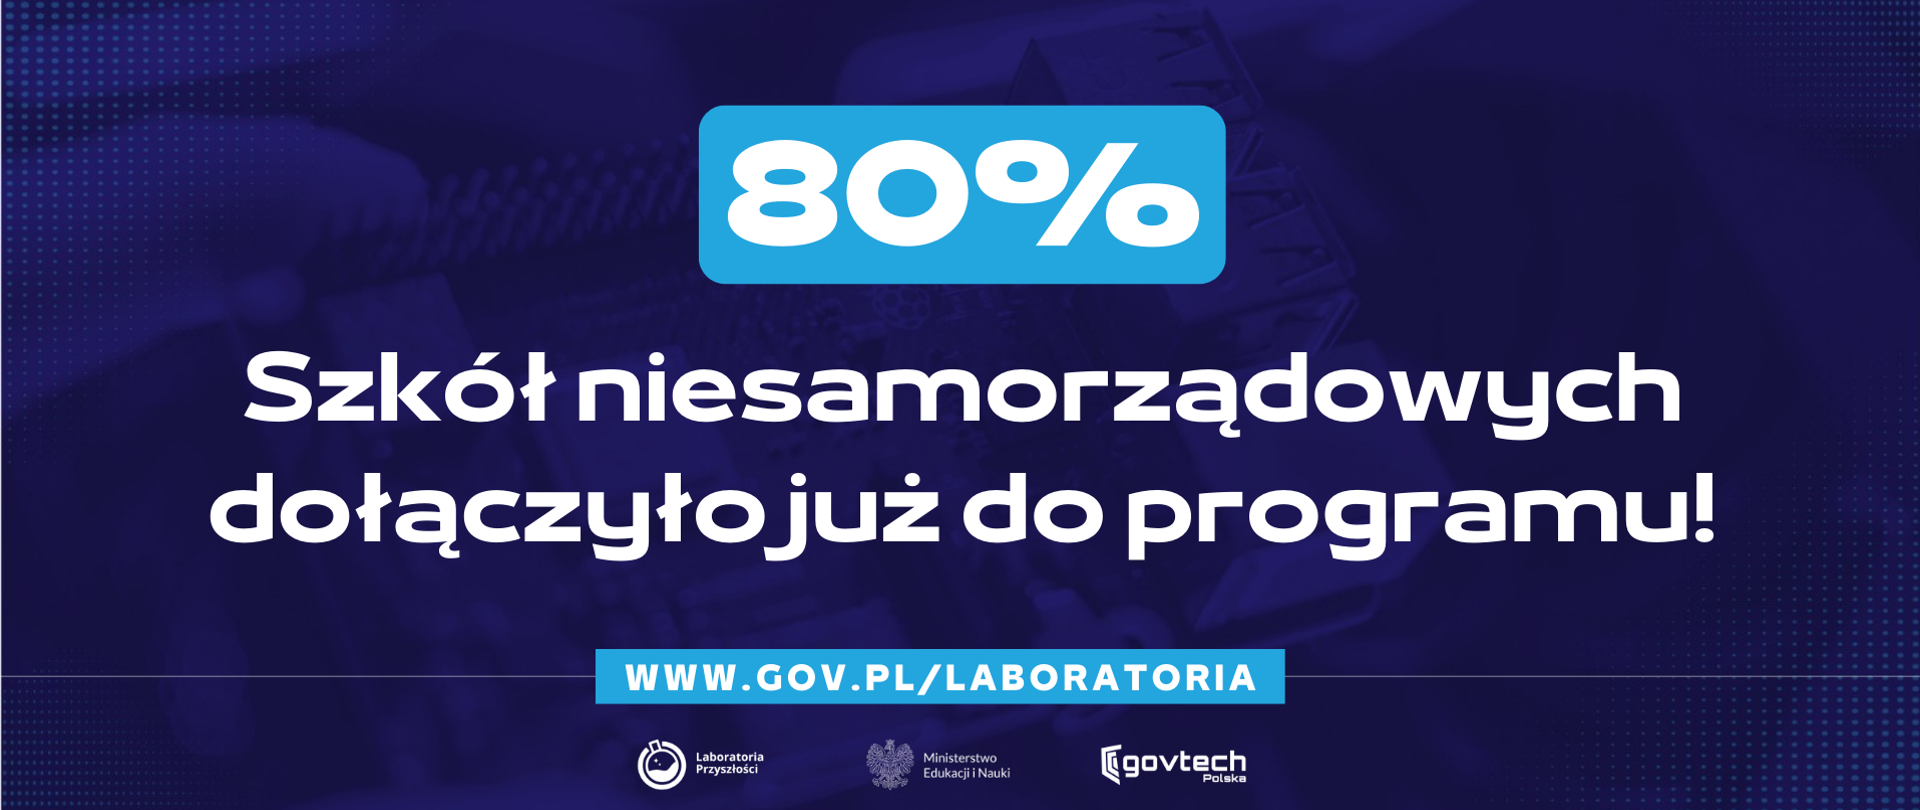 80% szkół niesamorządowych dołączyło już do programu!
www.gov.pl/laboratoria